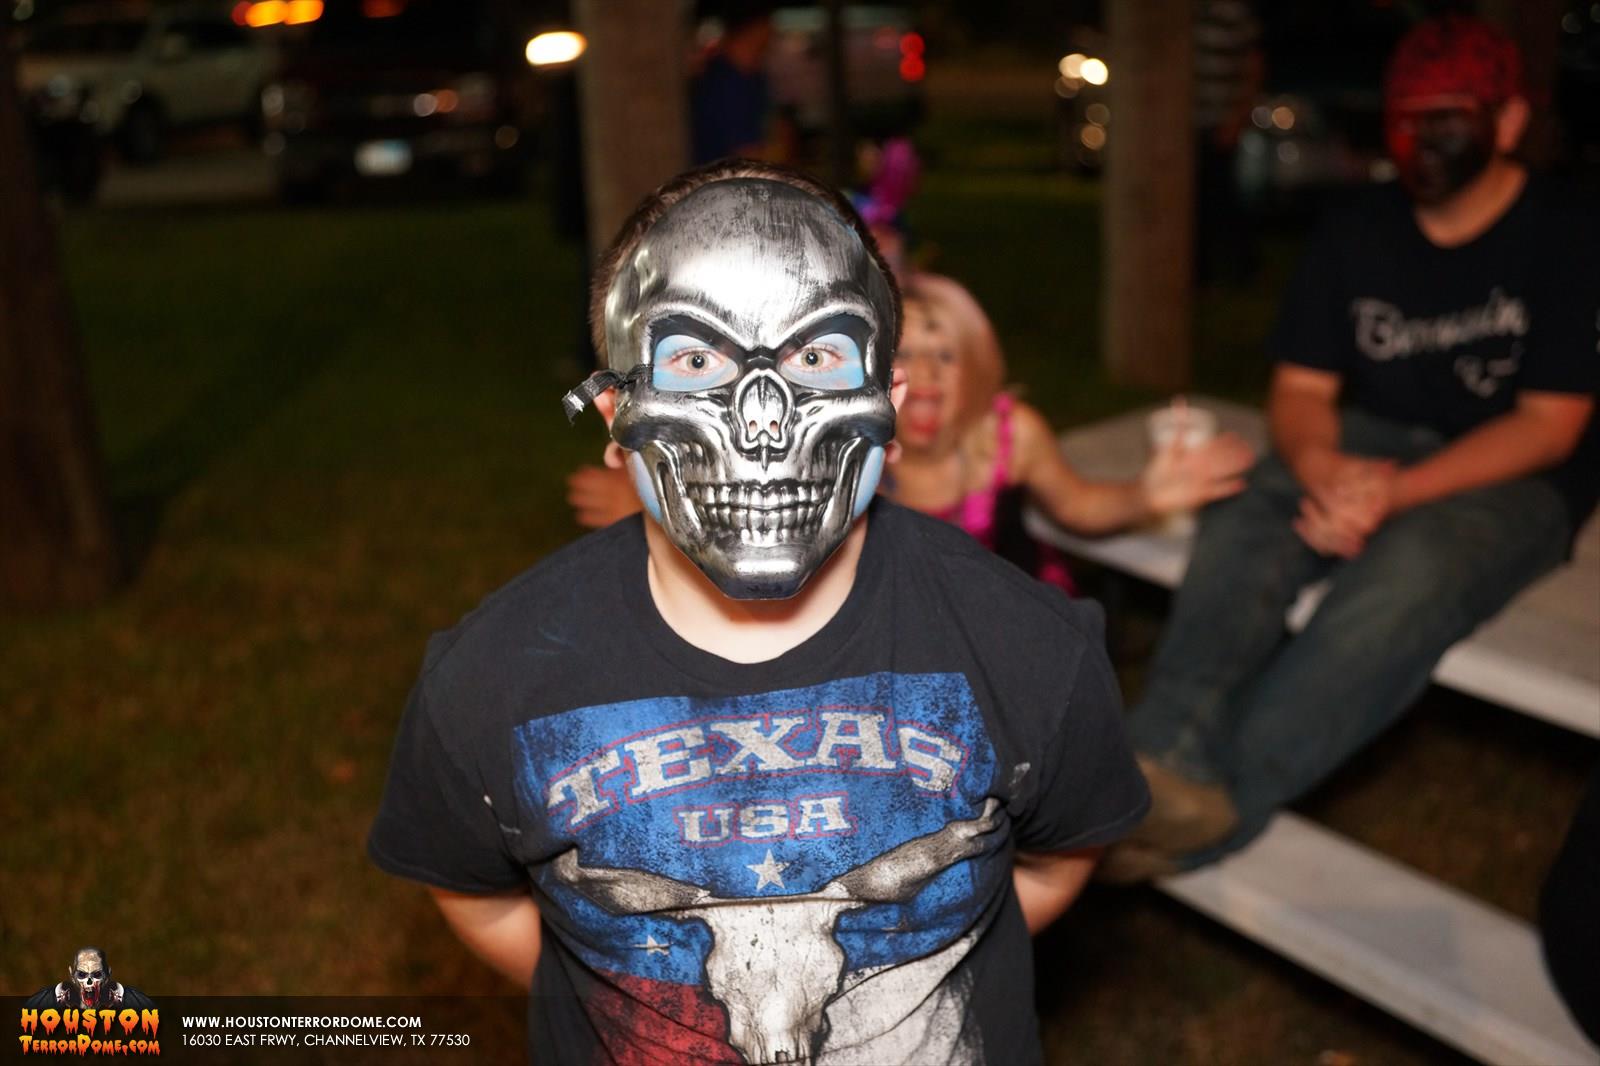 Kid in Skeleton Mask